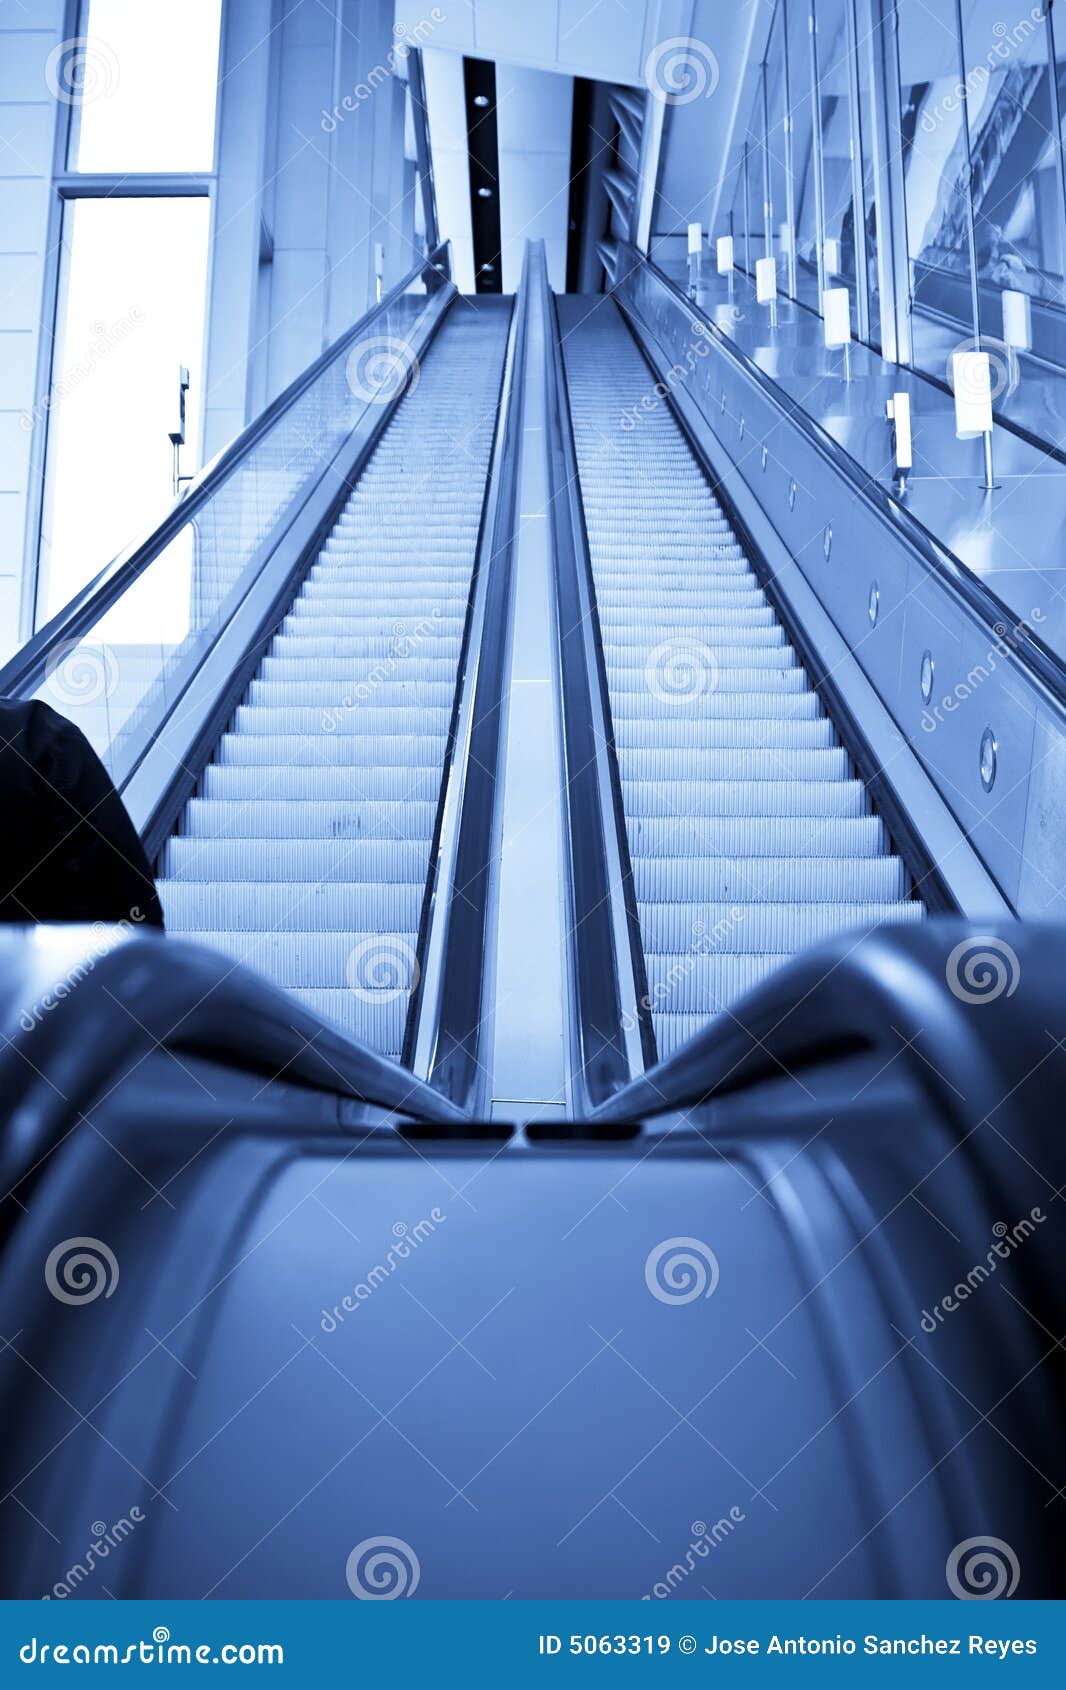 Aggregate 75+ escalator wallpaper latest